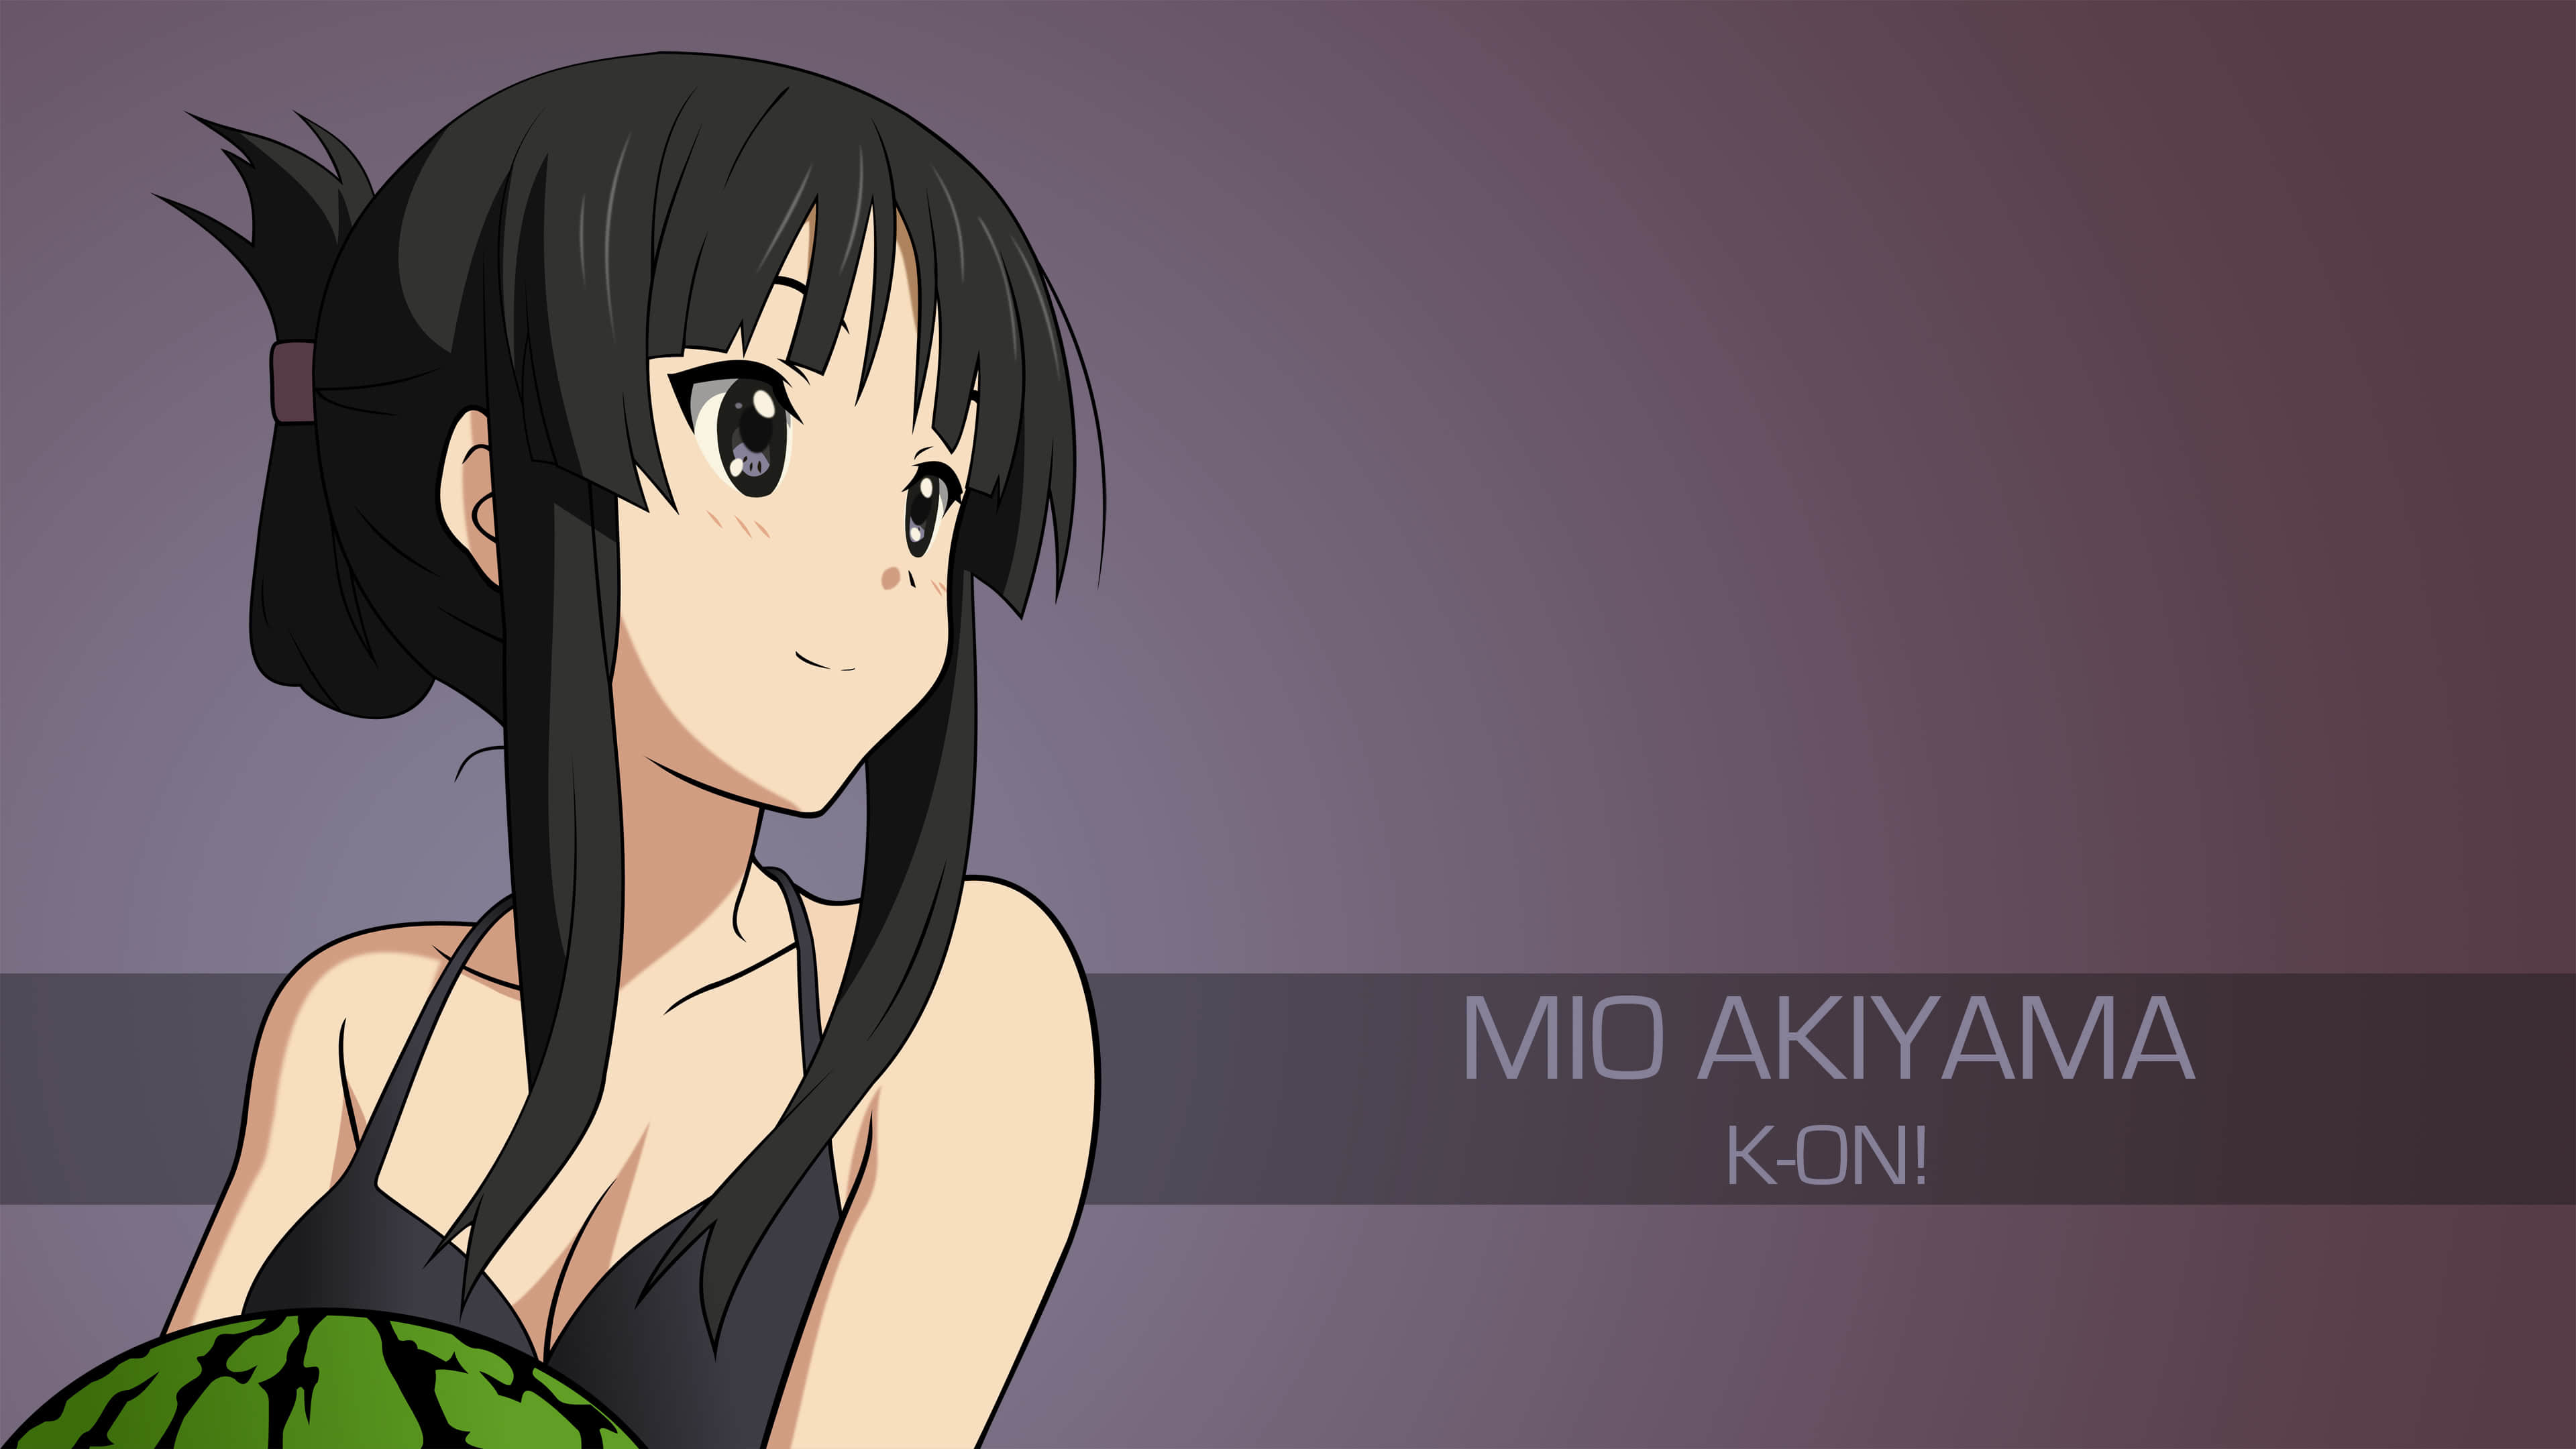 Mio Akiyama K-On! UHD 4K Wallpaper | Pixelz